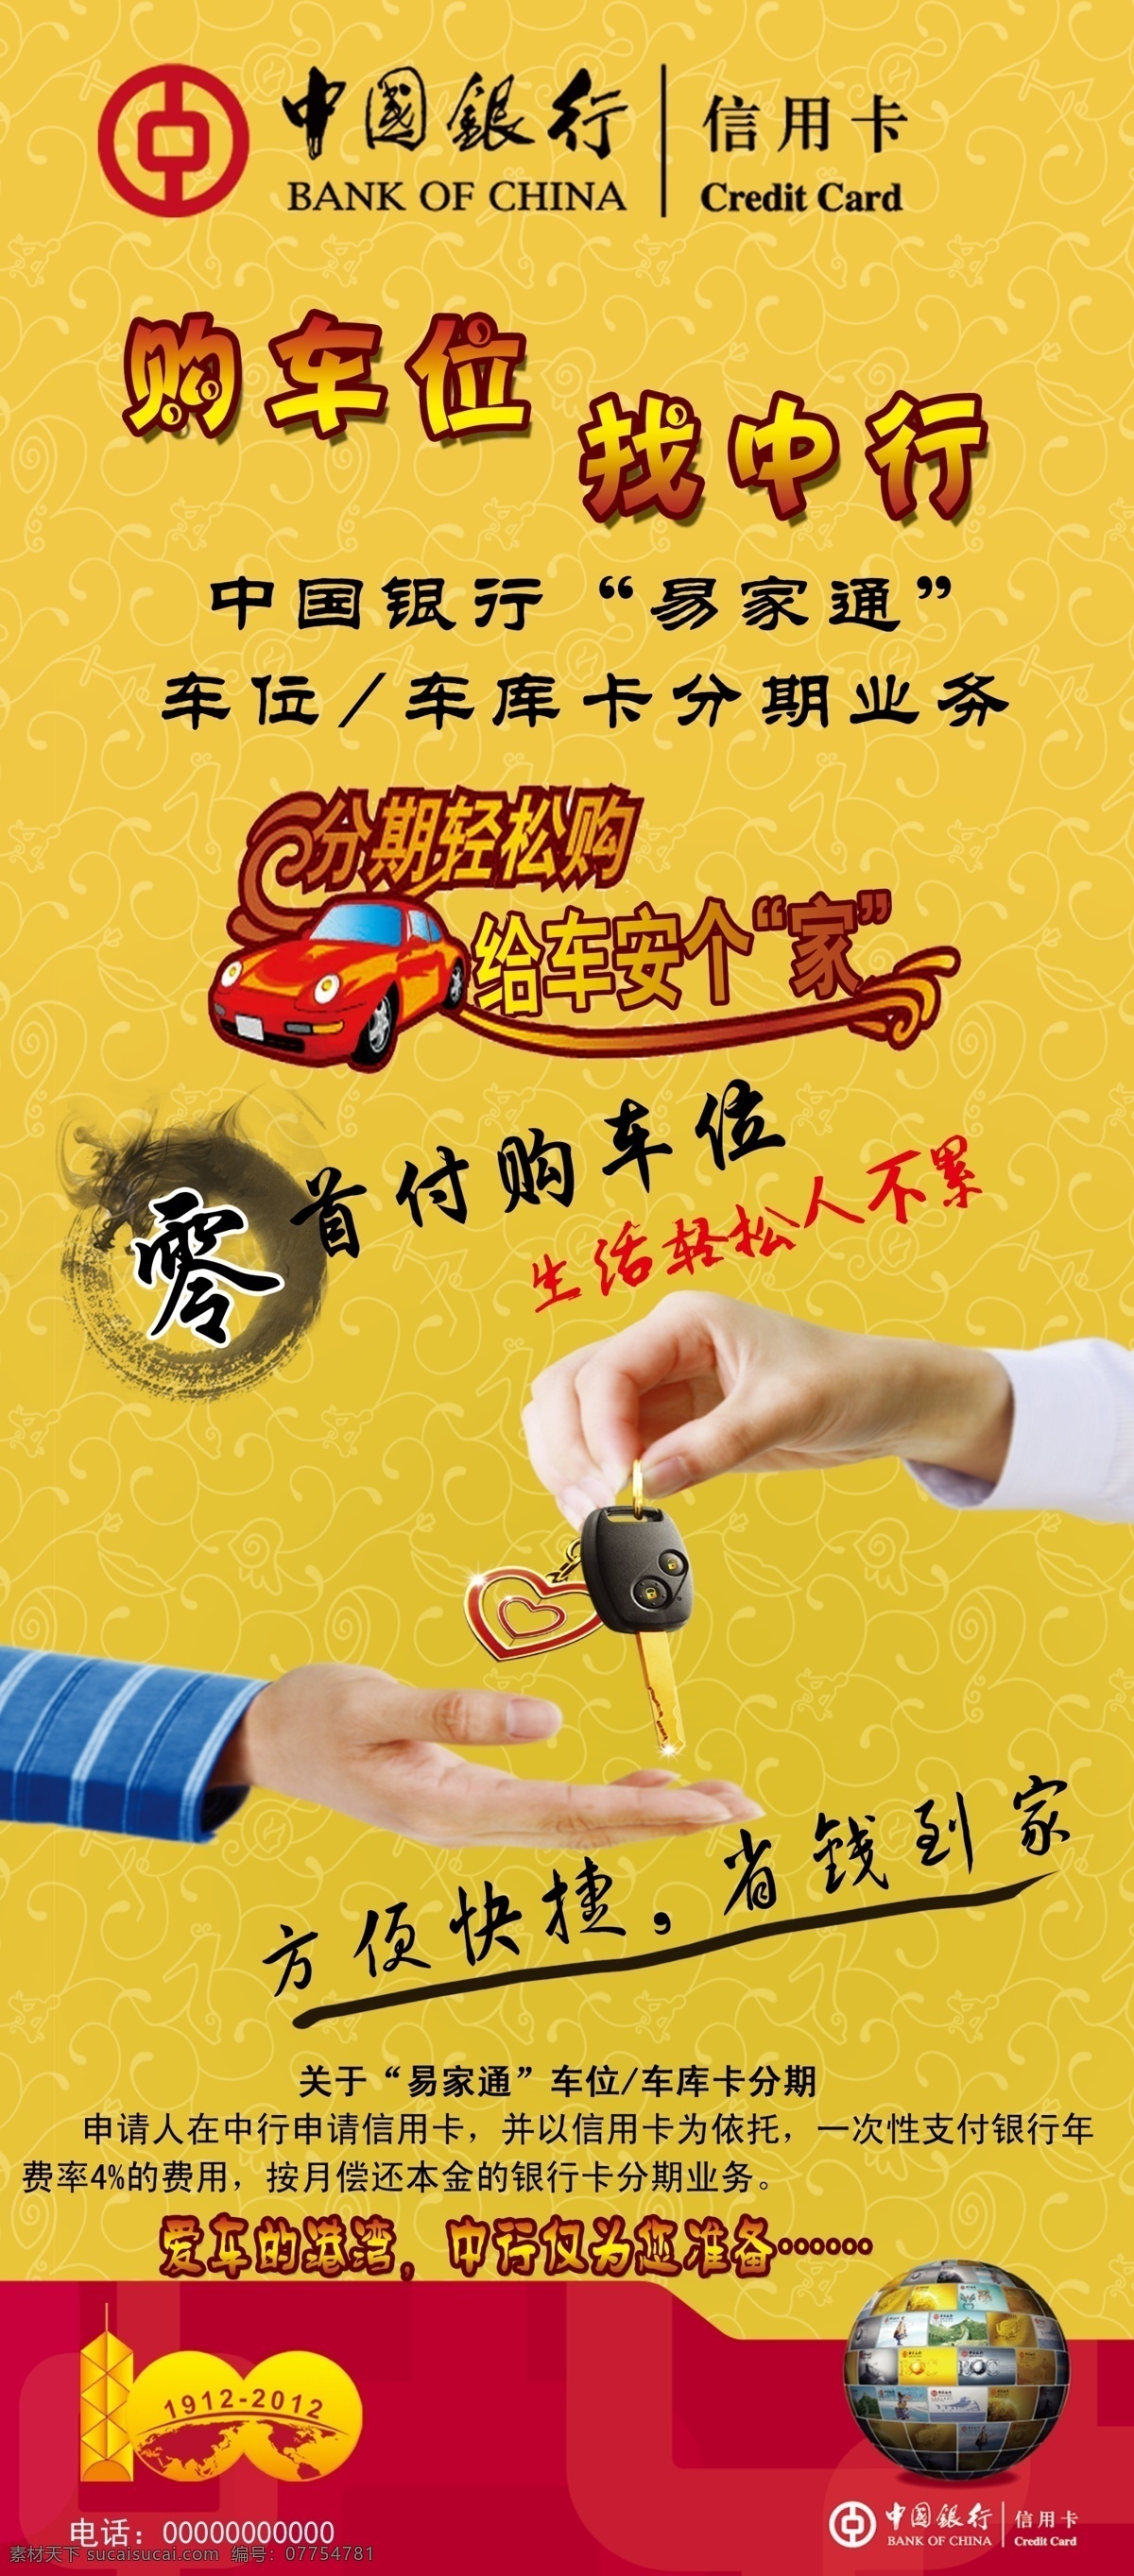 中国银行 易拉宝 中行logo 借记卡 车贷 钥匙 银行 贷款 黄色 水墨圈 手 展板模板 广告设计模板 源文件